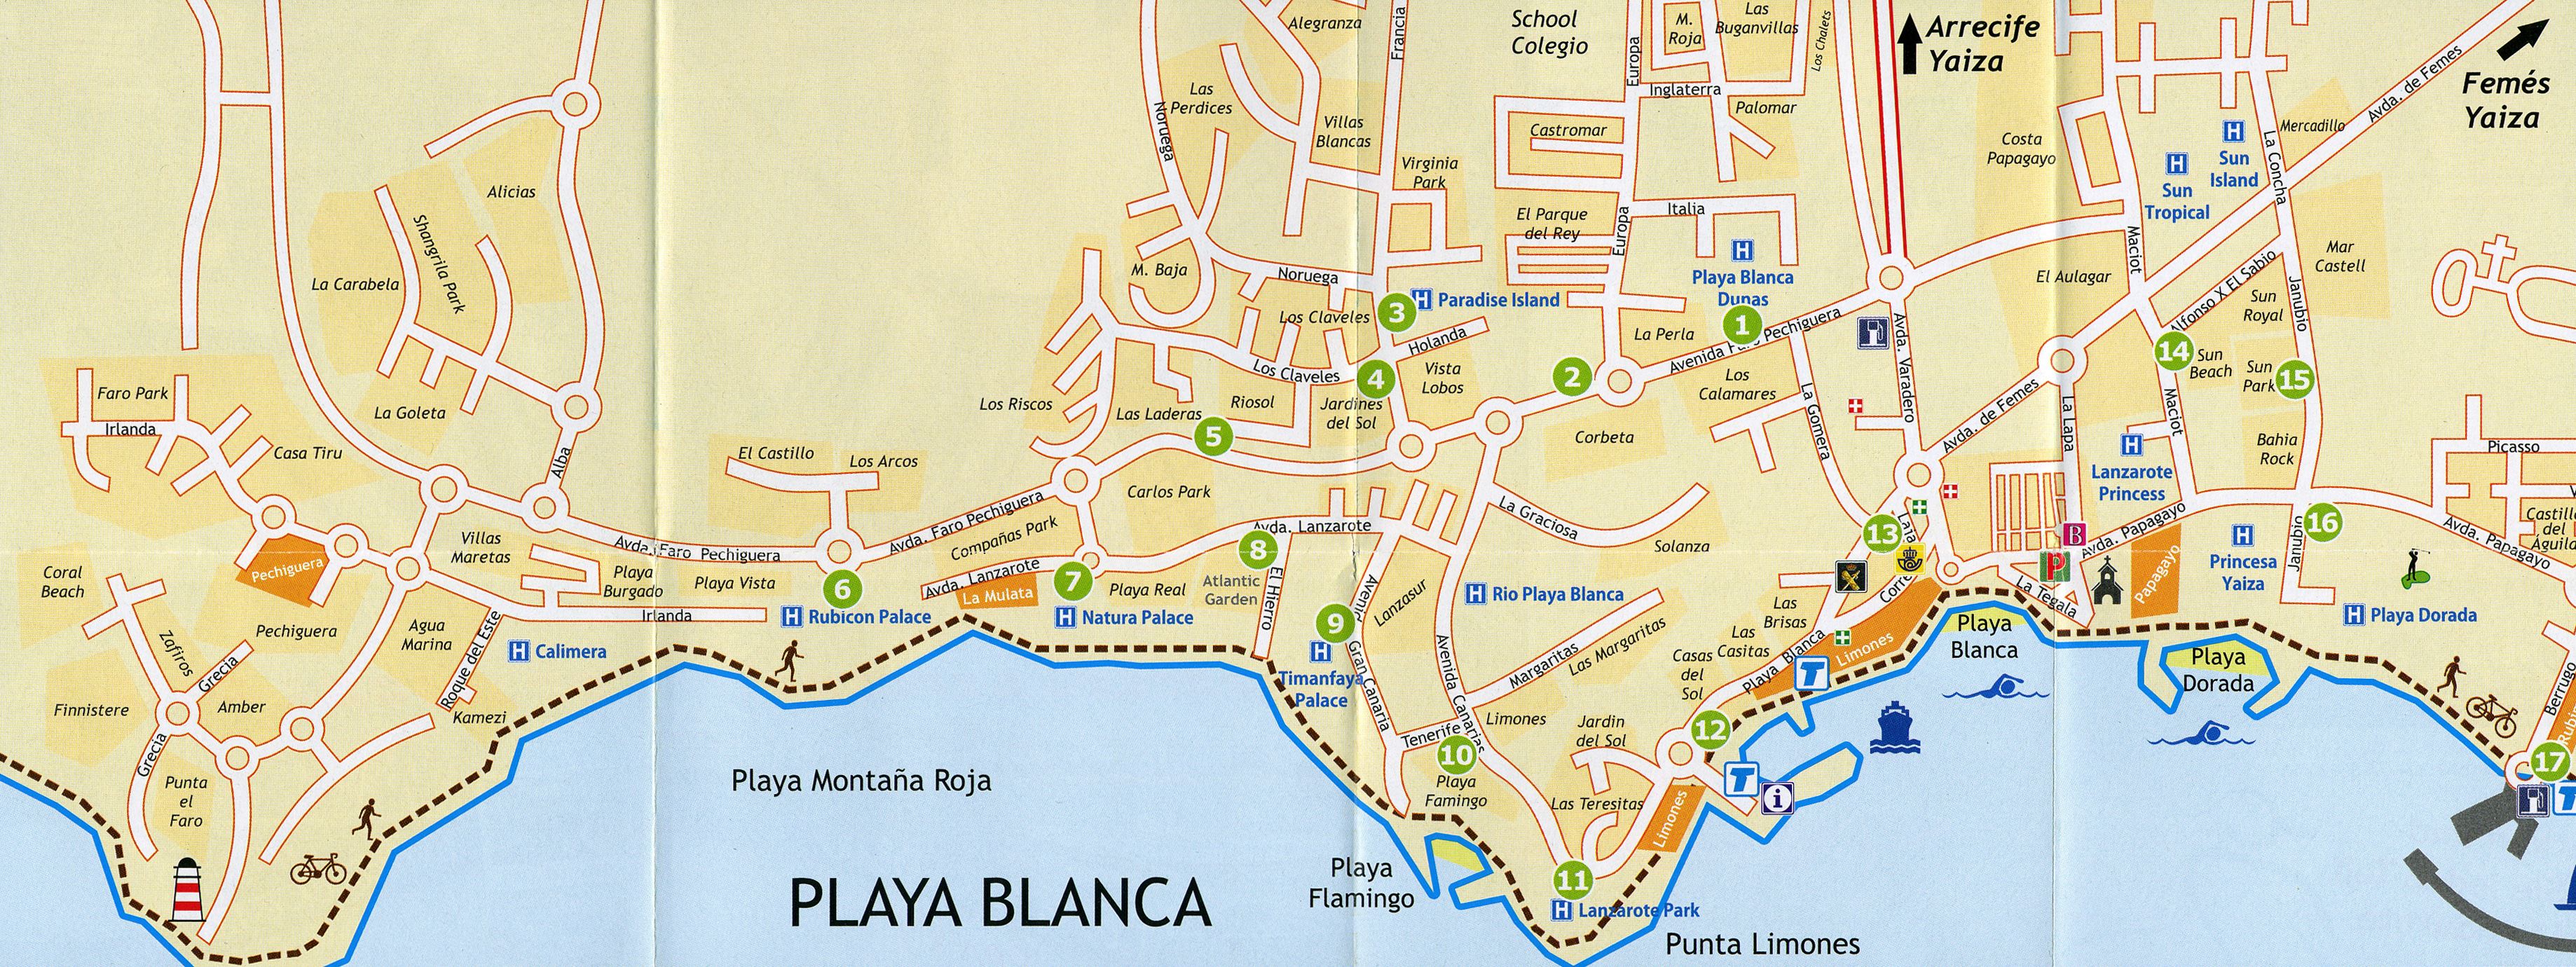 Playa Blanca Map 1 